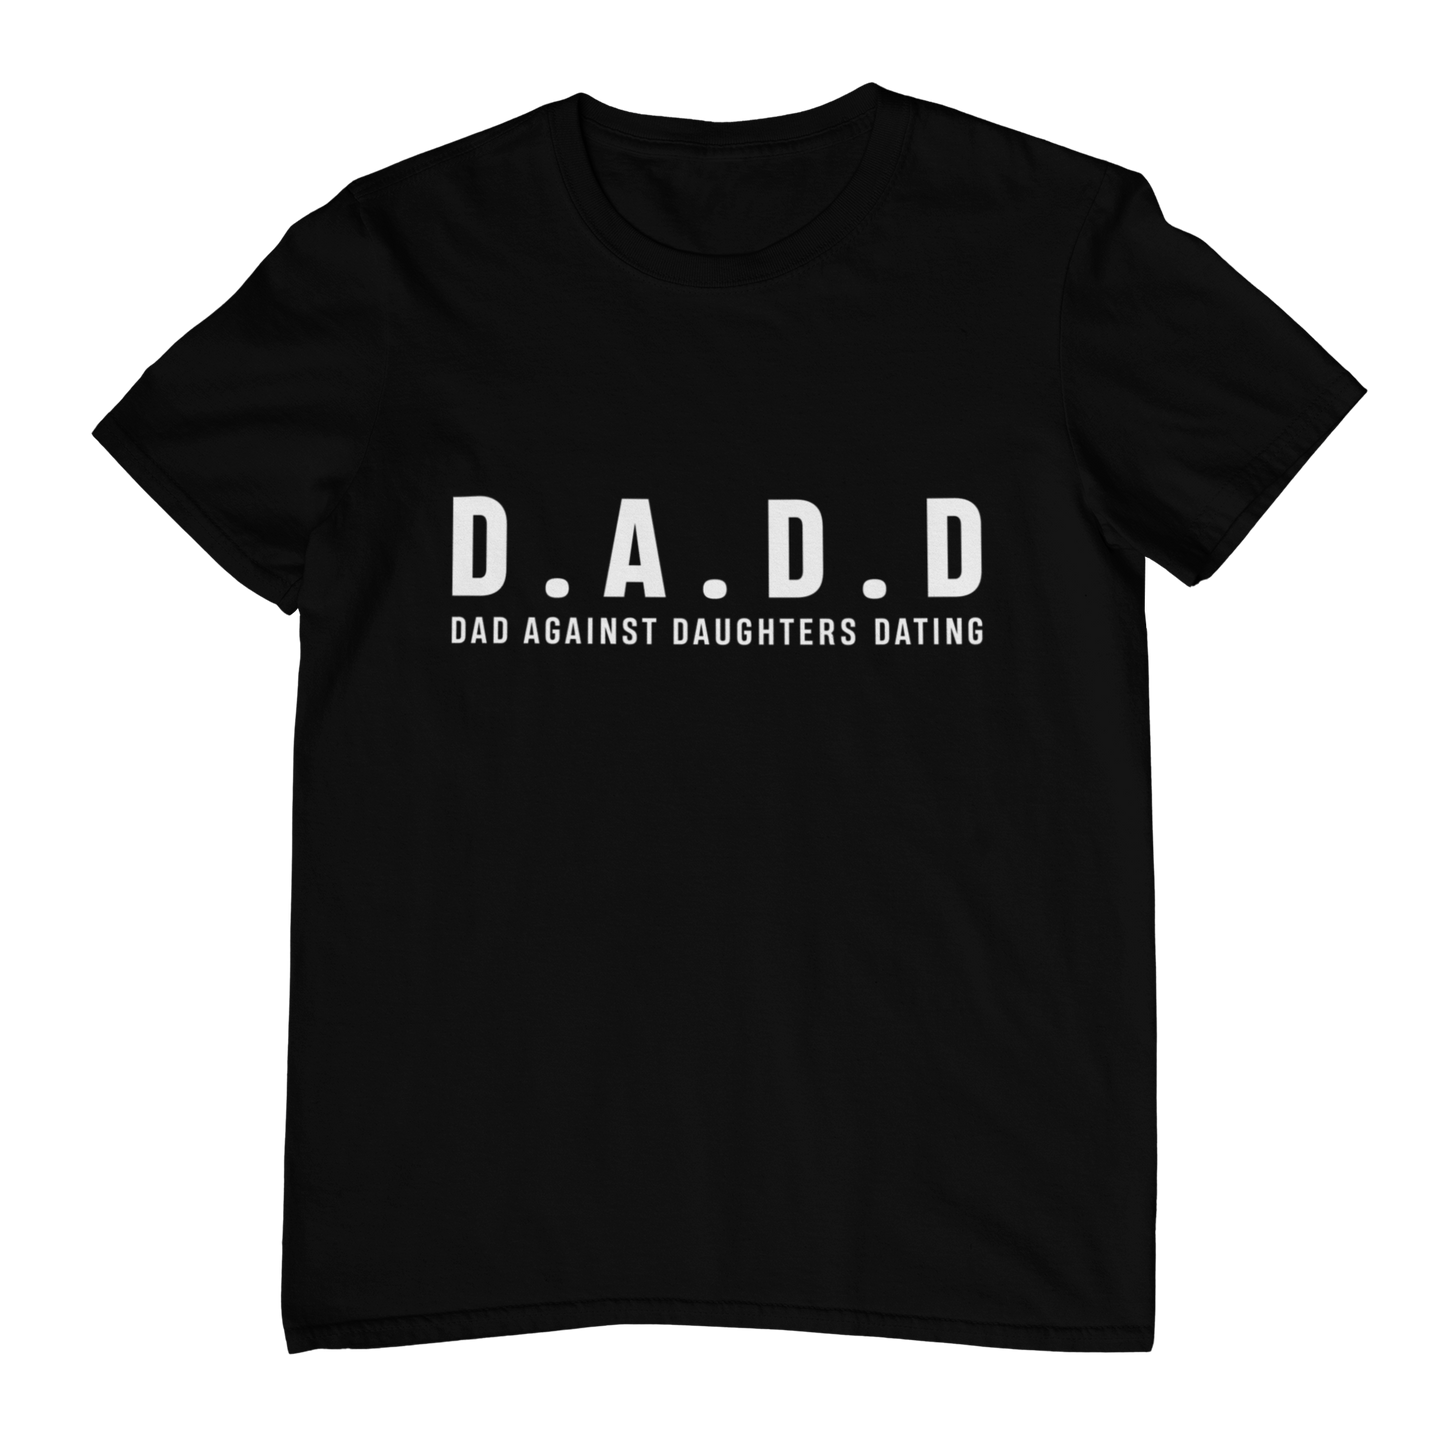 D.A.D.D T-shirt